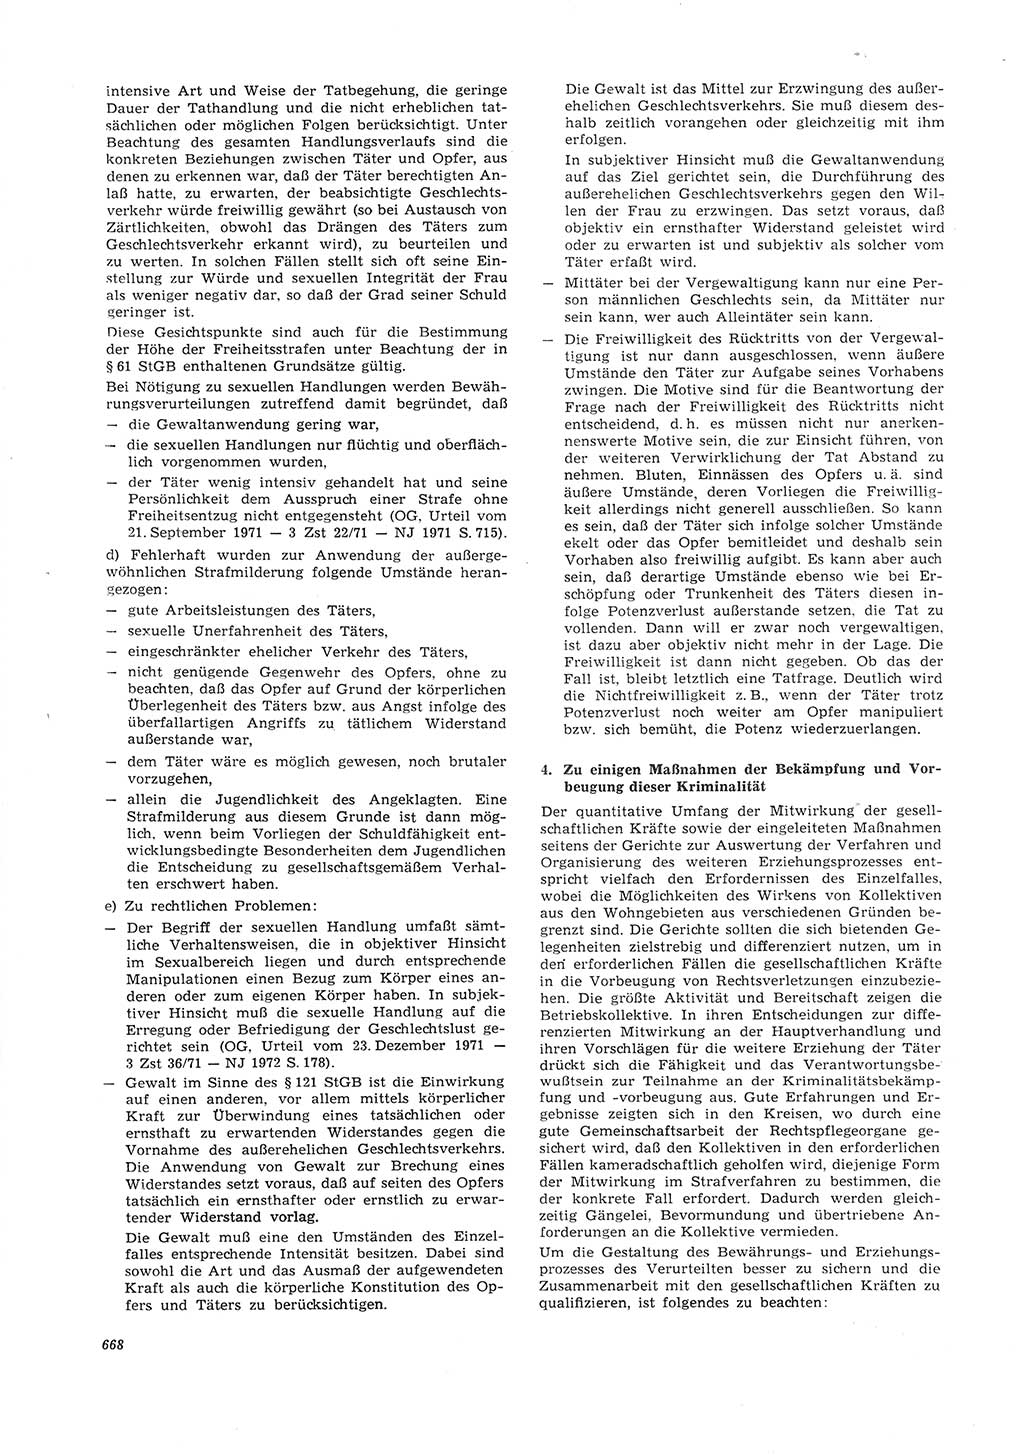 Neue Justiz (NJ), Zeitschrift für Recht und Rechtswissenschaft [Deutsche Demokratische Republik (DDR)], 26. Jahrgang 1972, Seite 668 (NJ DDR 1972, S. 668)